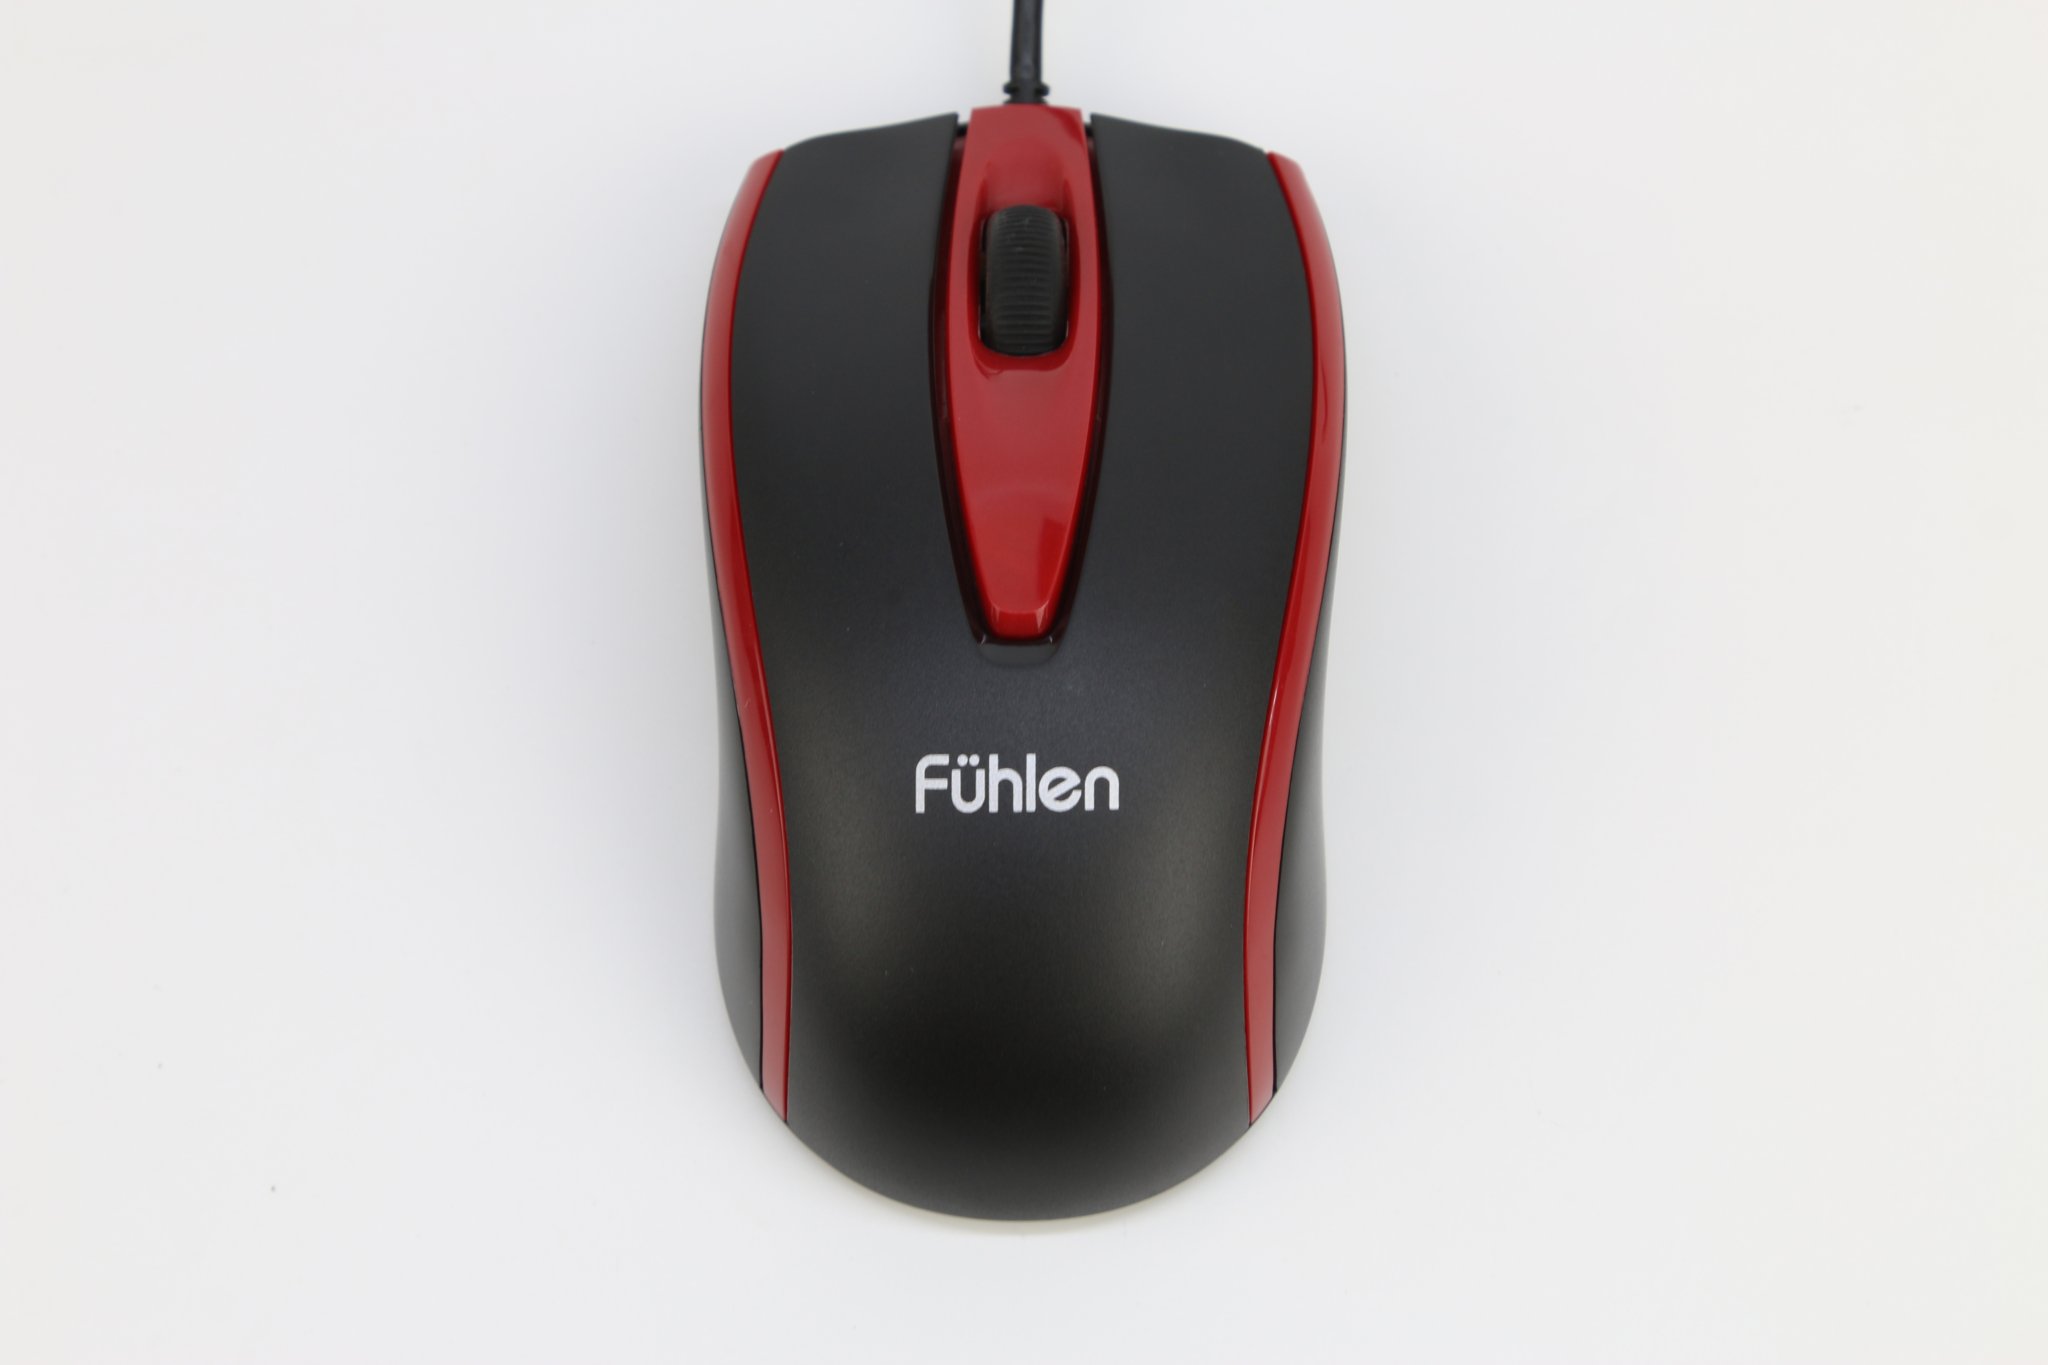 Chuột Fuhlen L102 (USB/đen đỏ) có thiết kế phổ thông